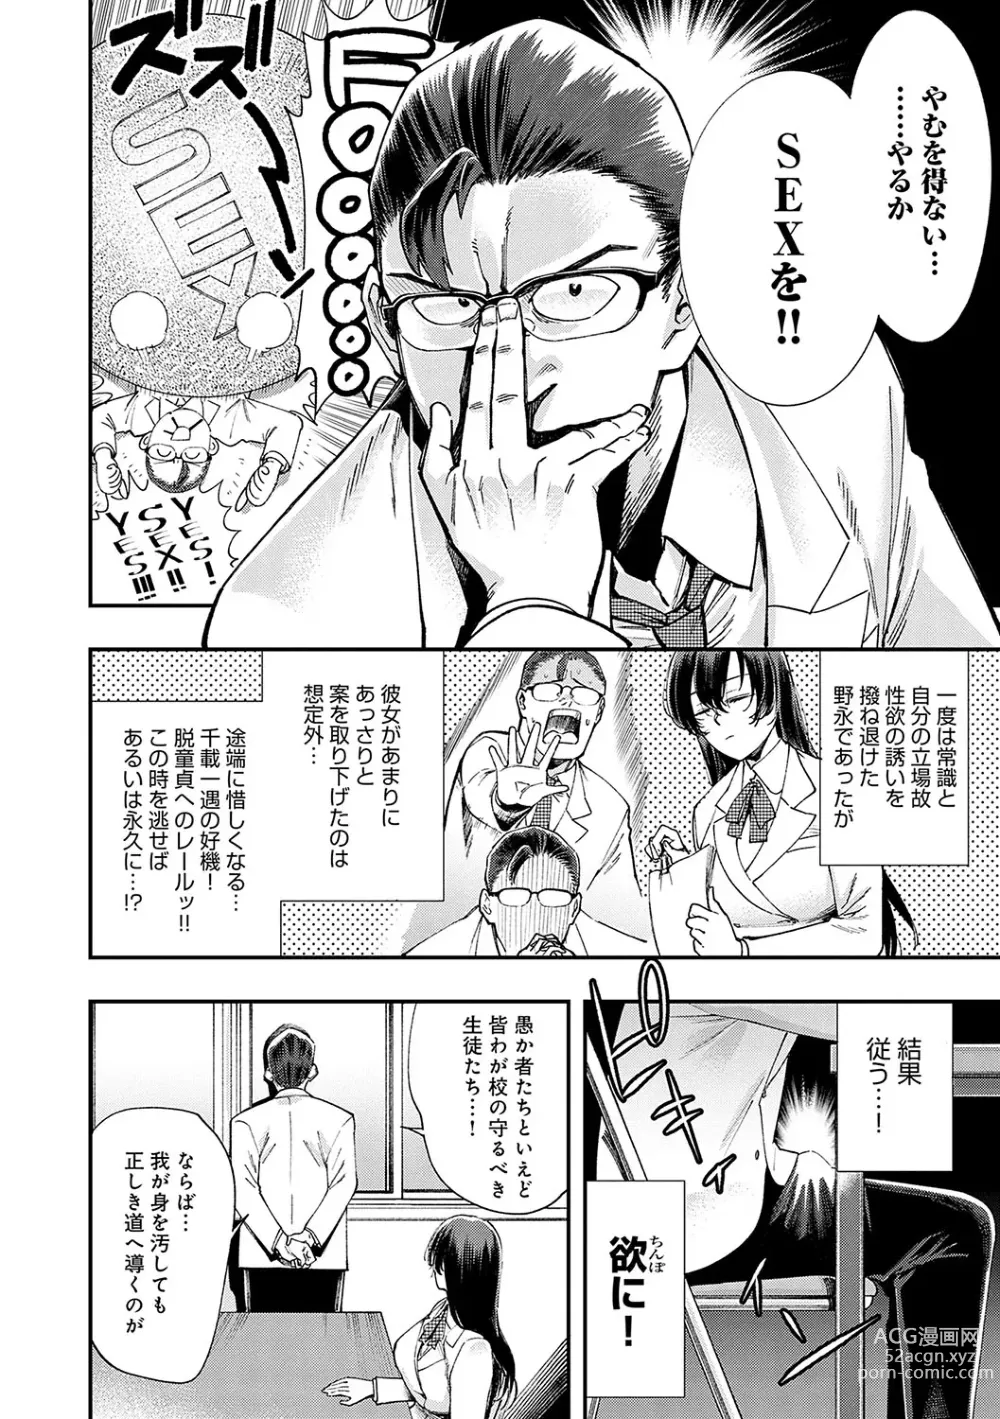 Page 13 of manga Kashikoi Oppai